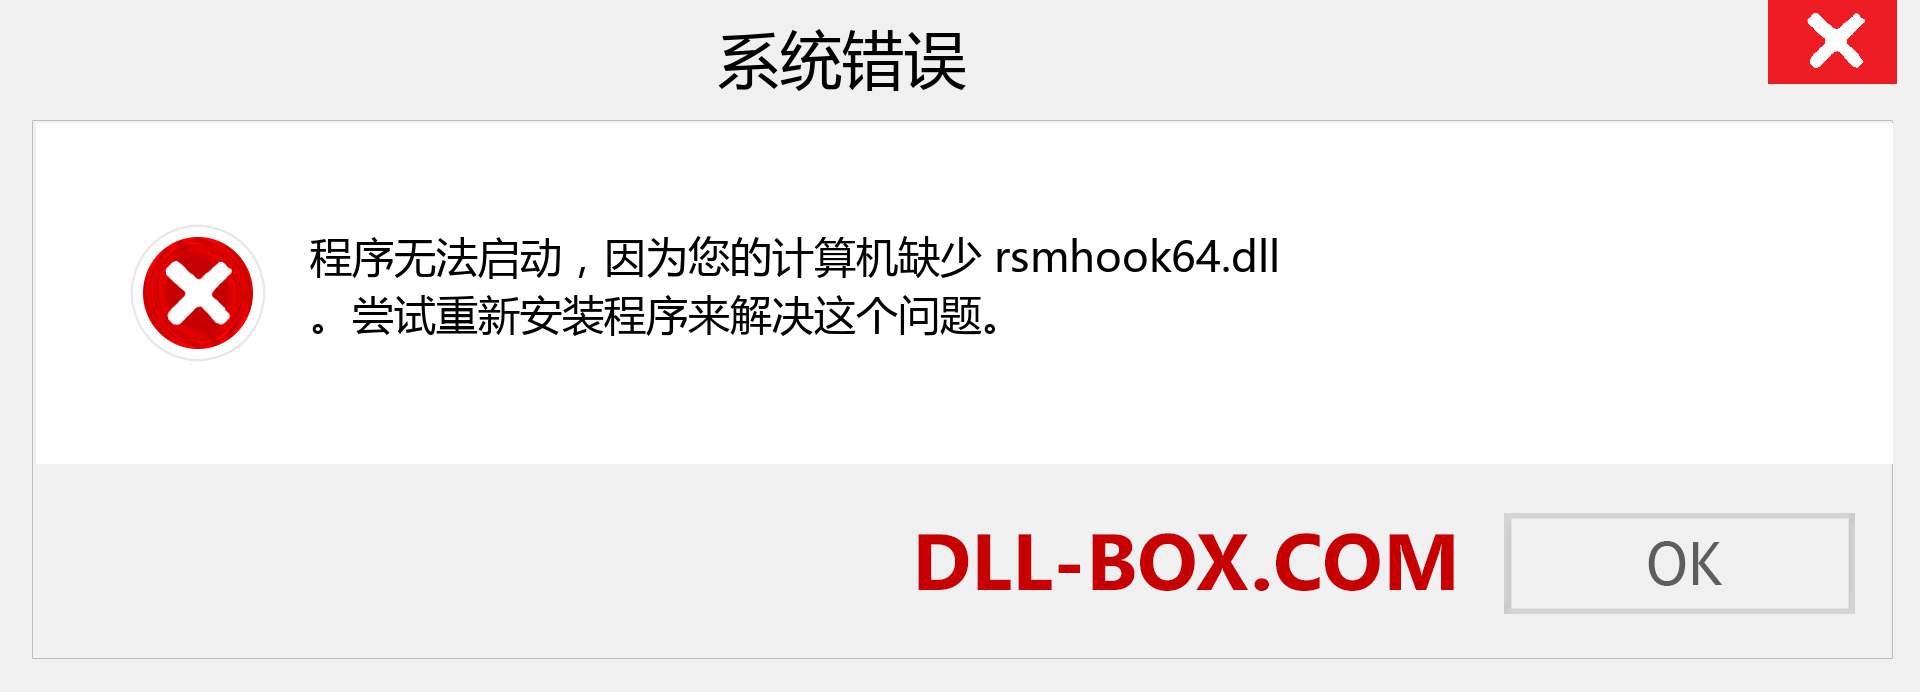 rsmhook64.dll 文件丢失？。 适用于 Windows 7、8、10 的下载 - 修复 Windows、照片、图像上的 rsmhook64 dll 丢失错误